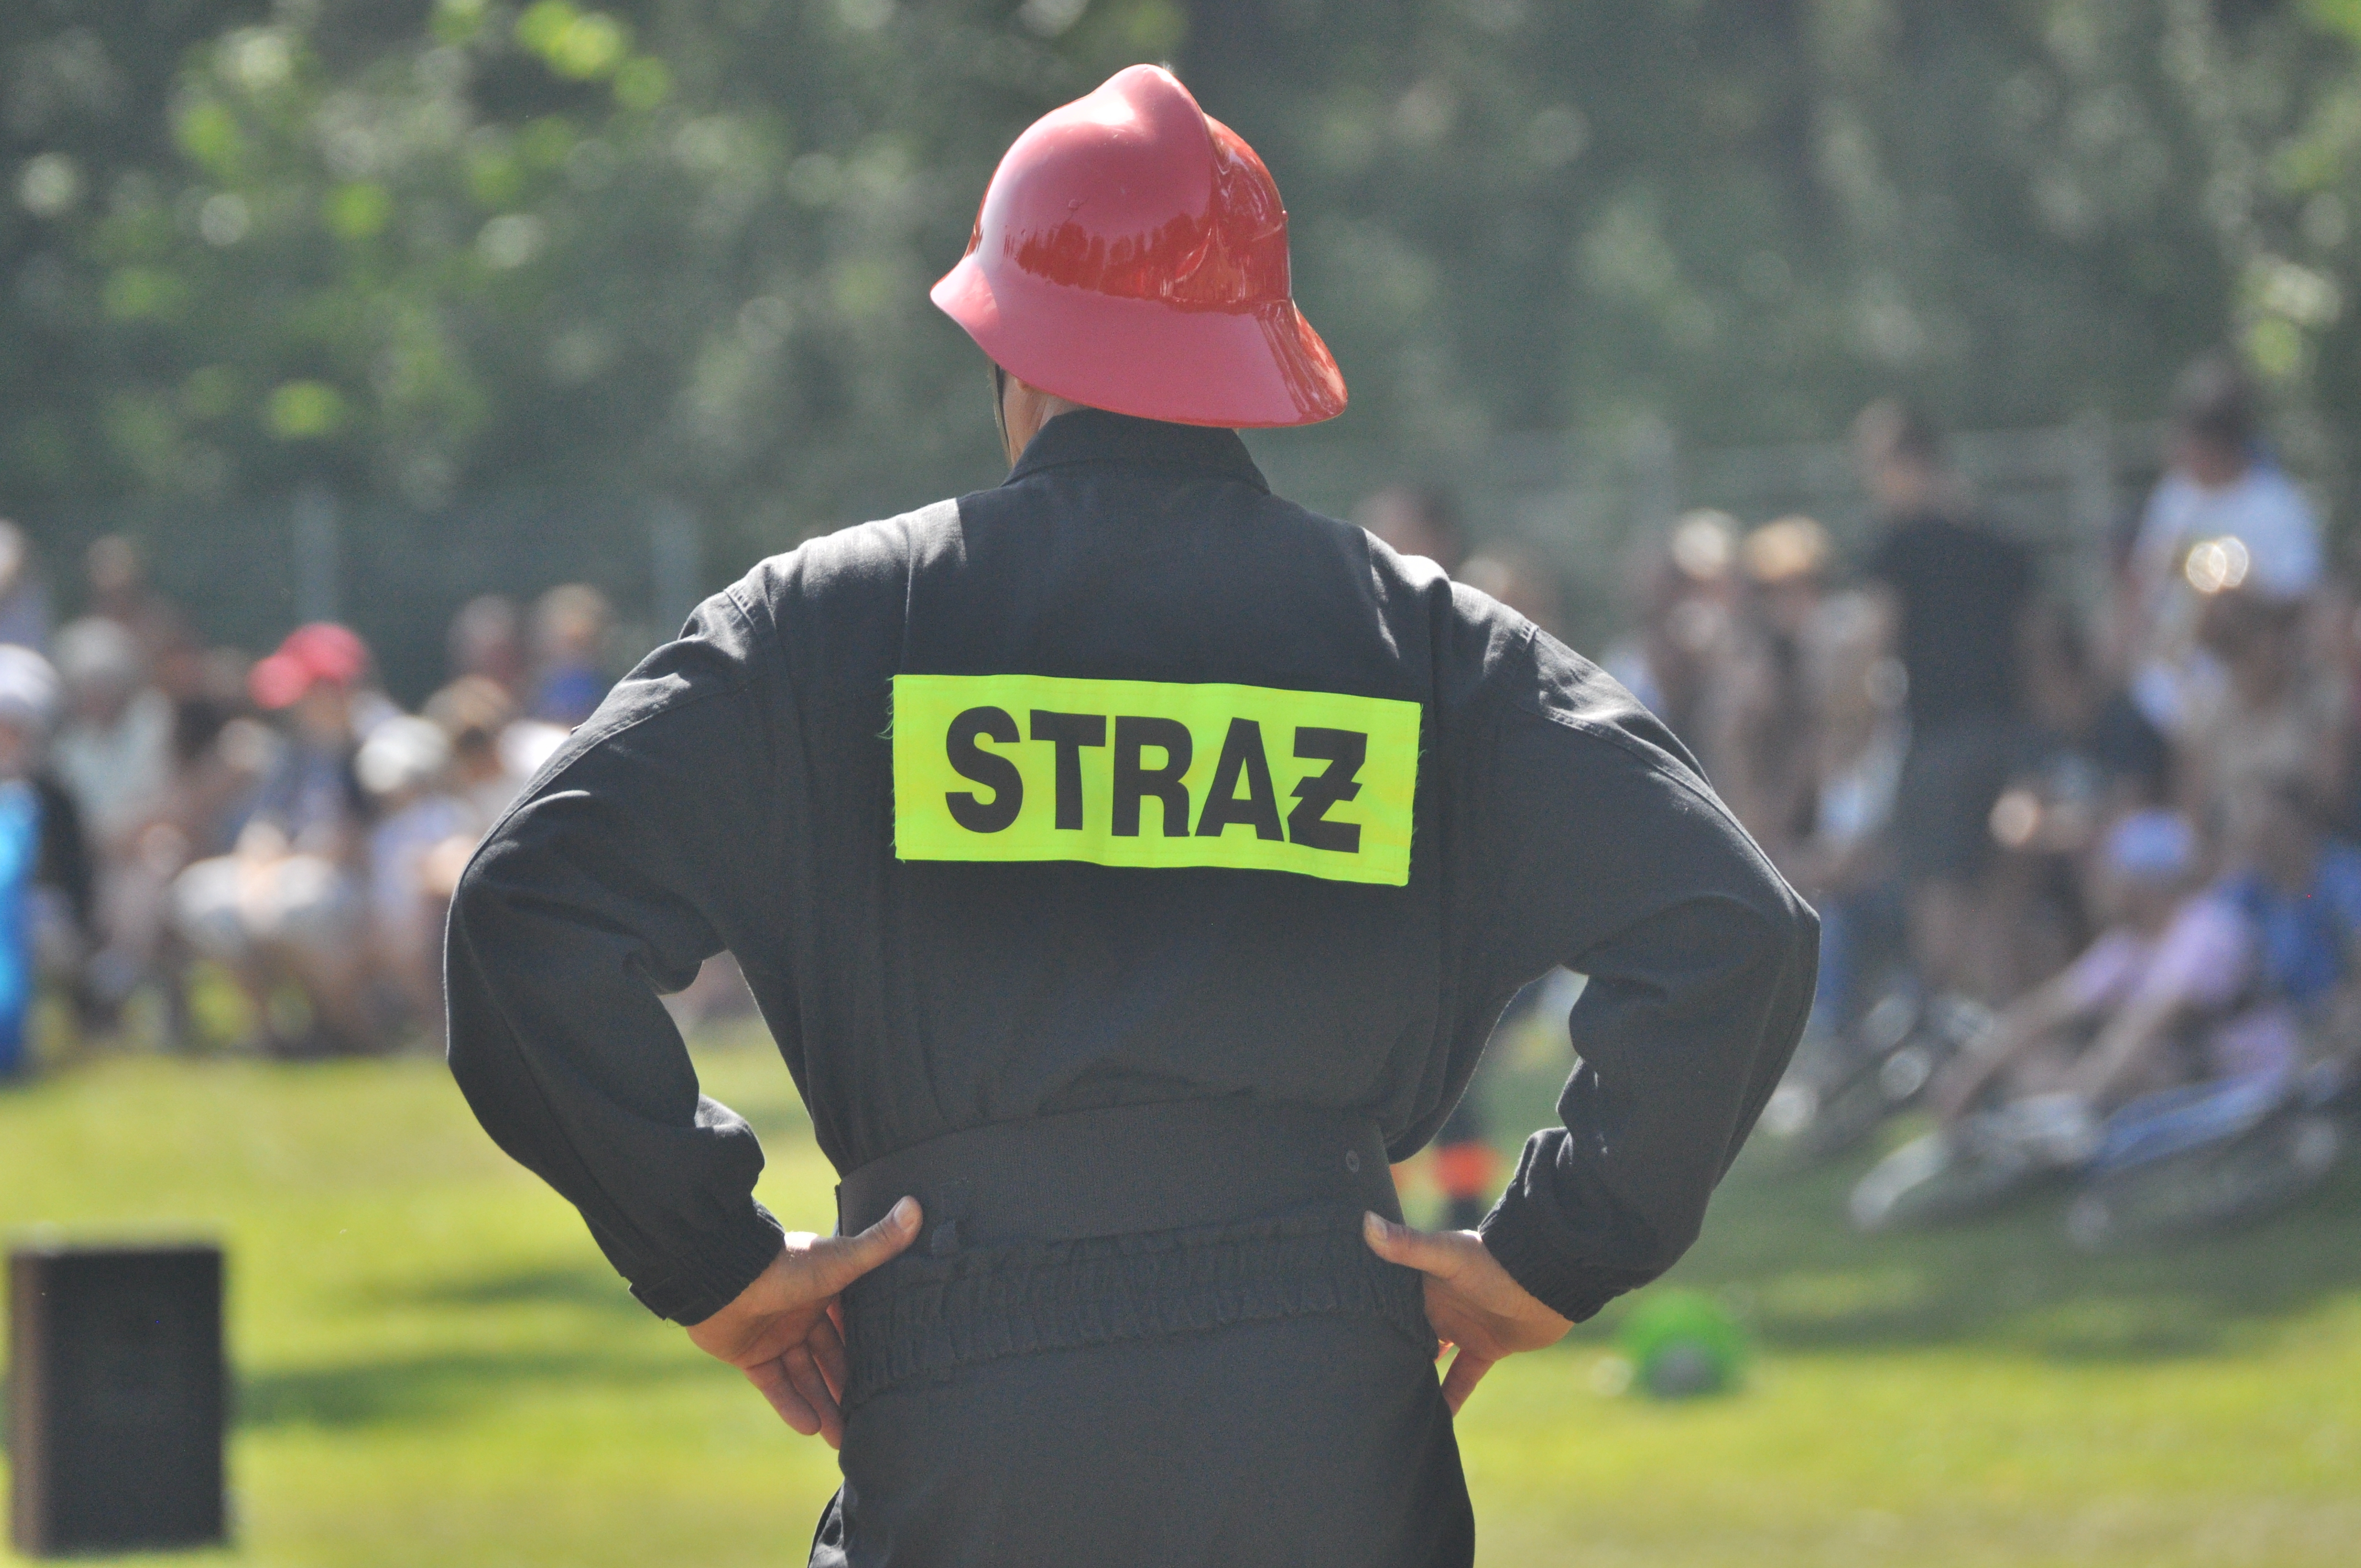 Zawody ochotniczych straży pożarnych w Weryni | GALERIA ZDJĘĆ | - Zdjęcie główne